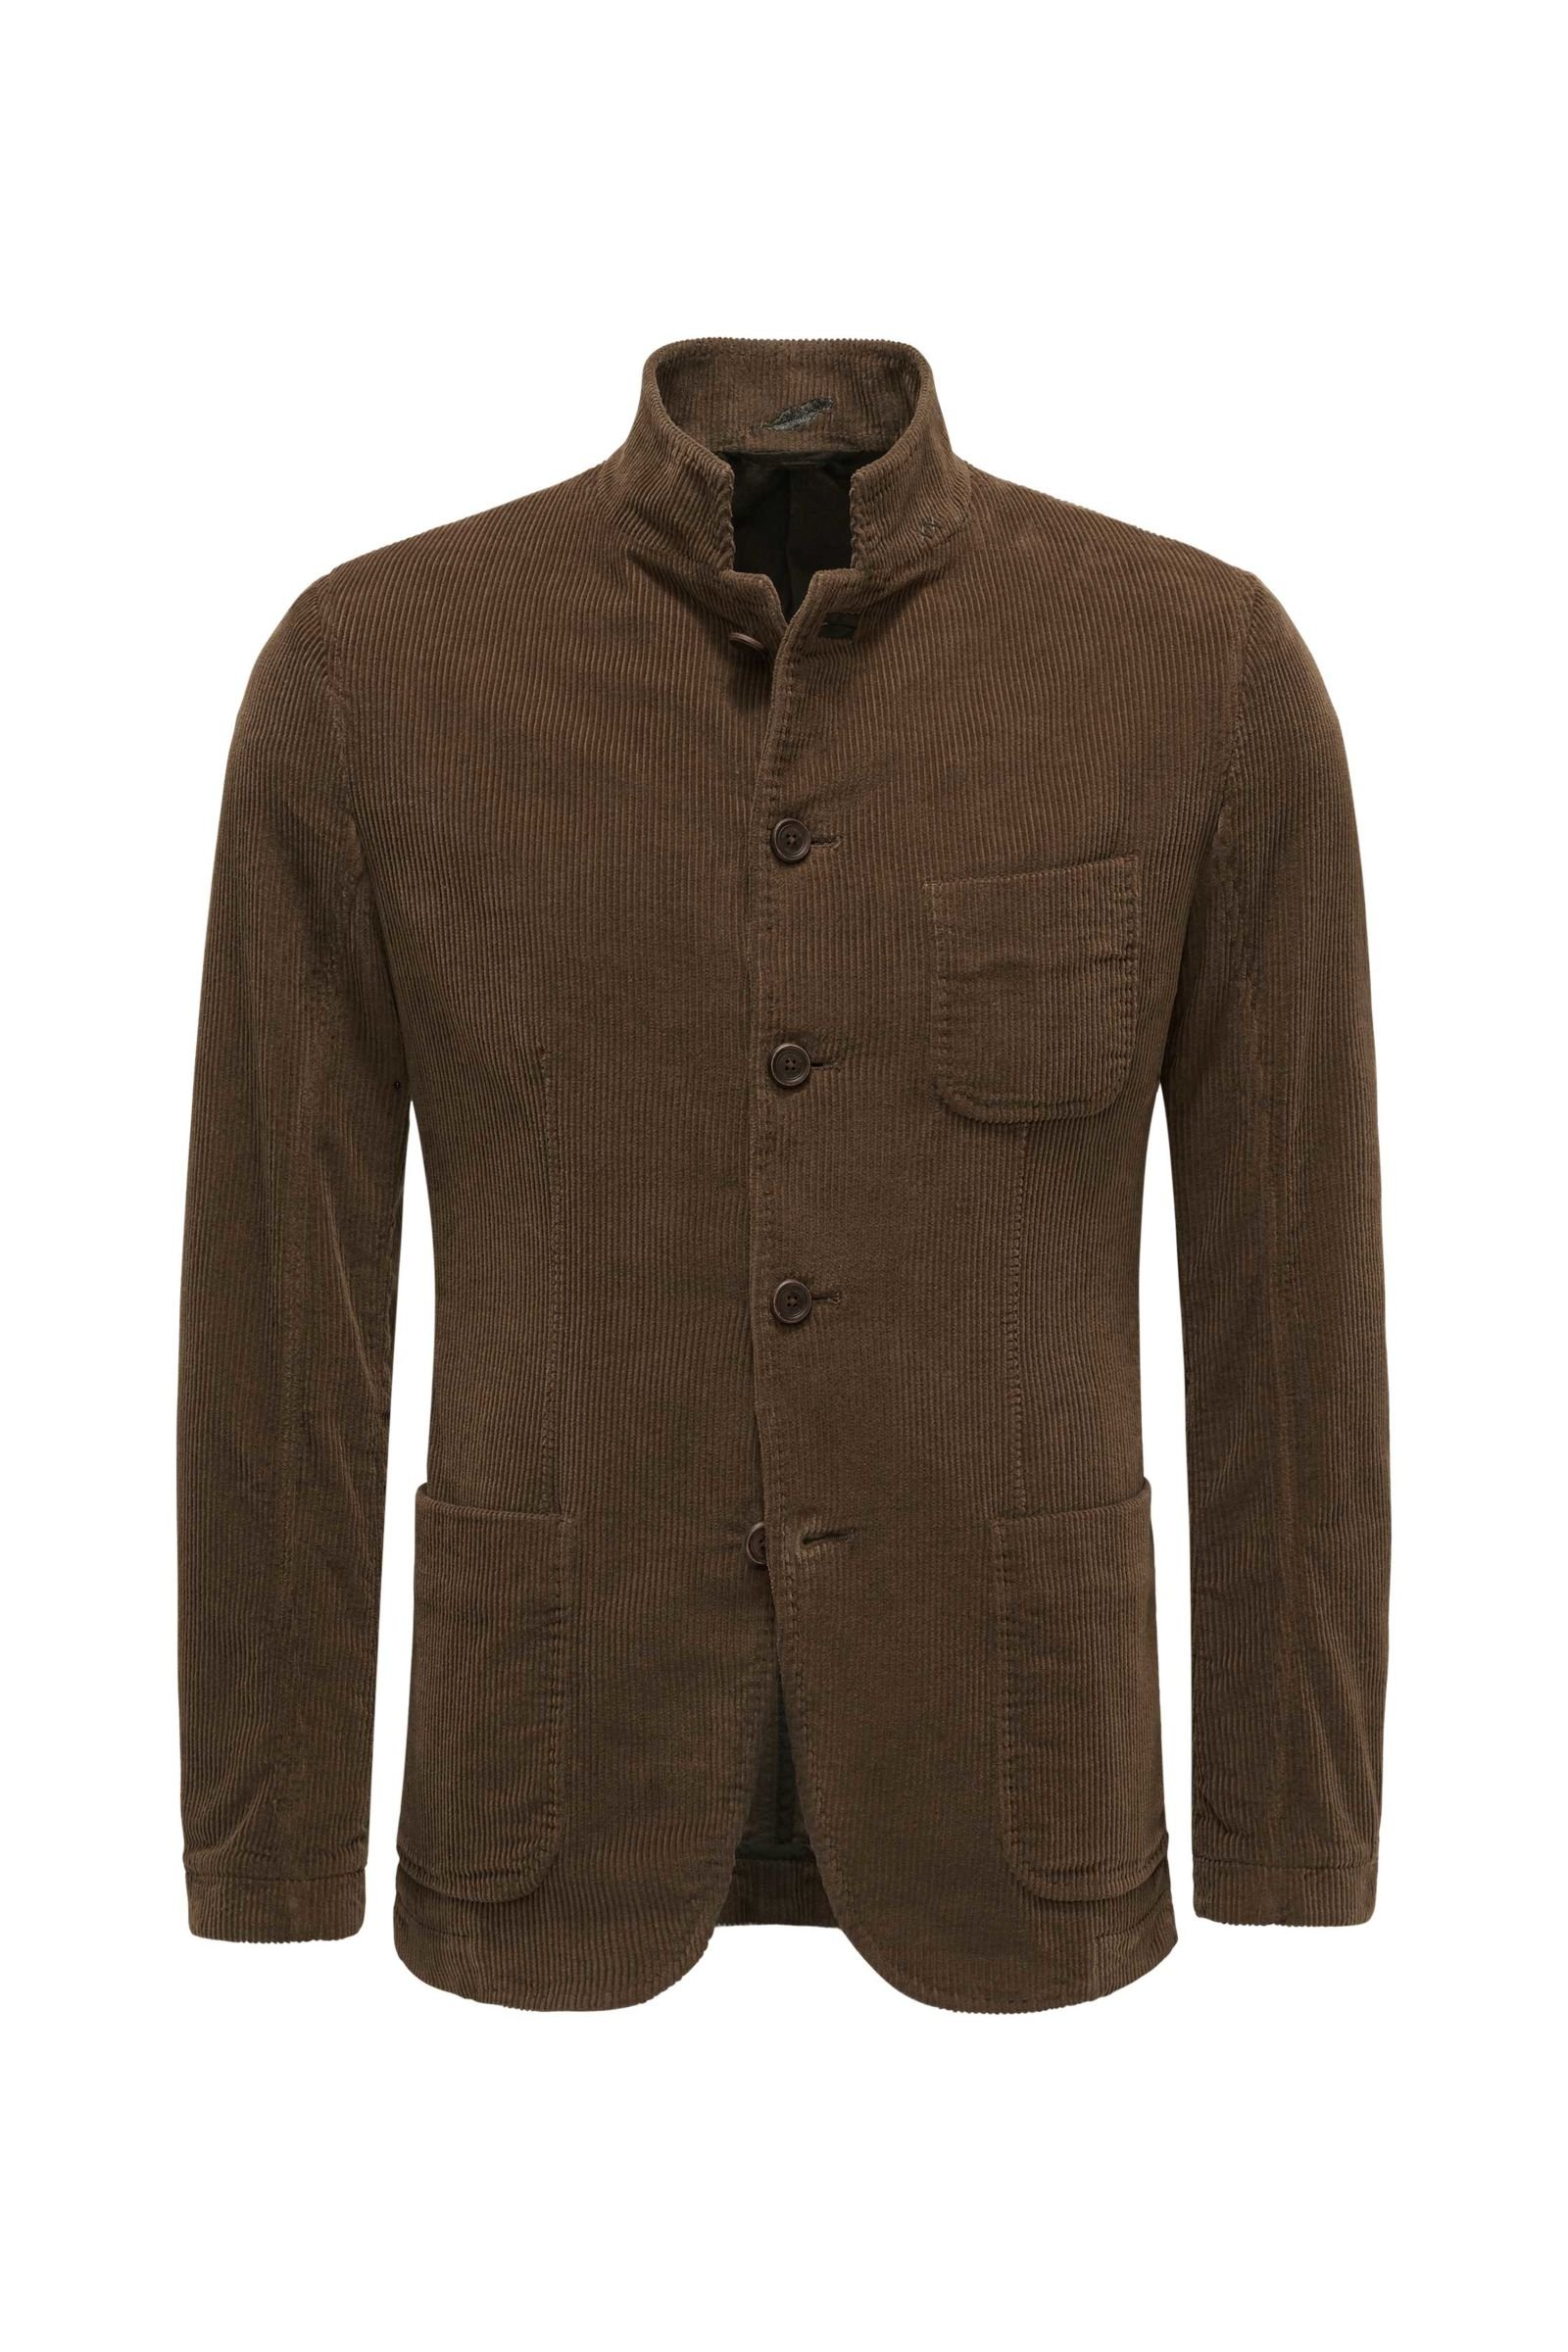 Corduroy jacket brown